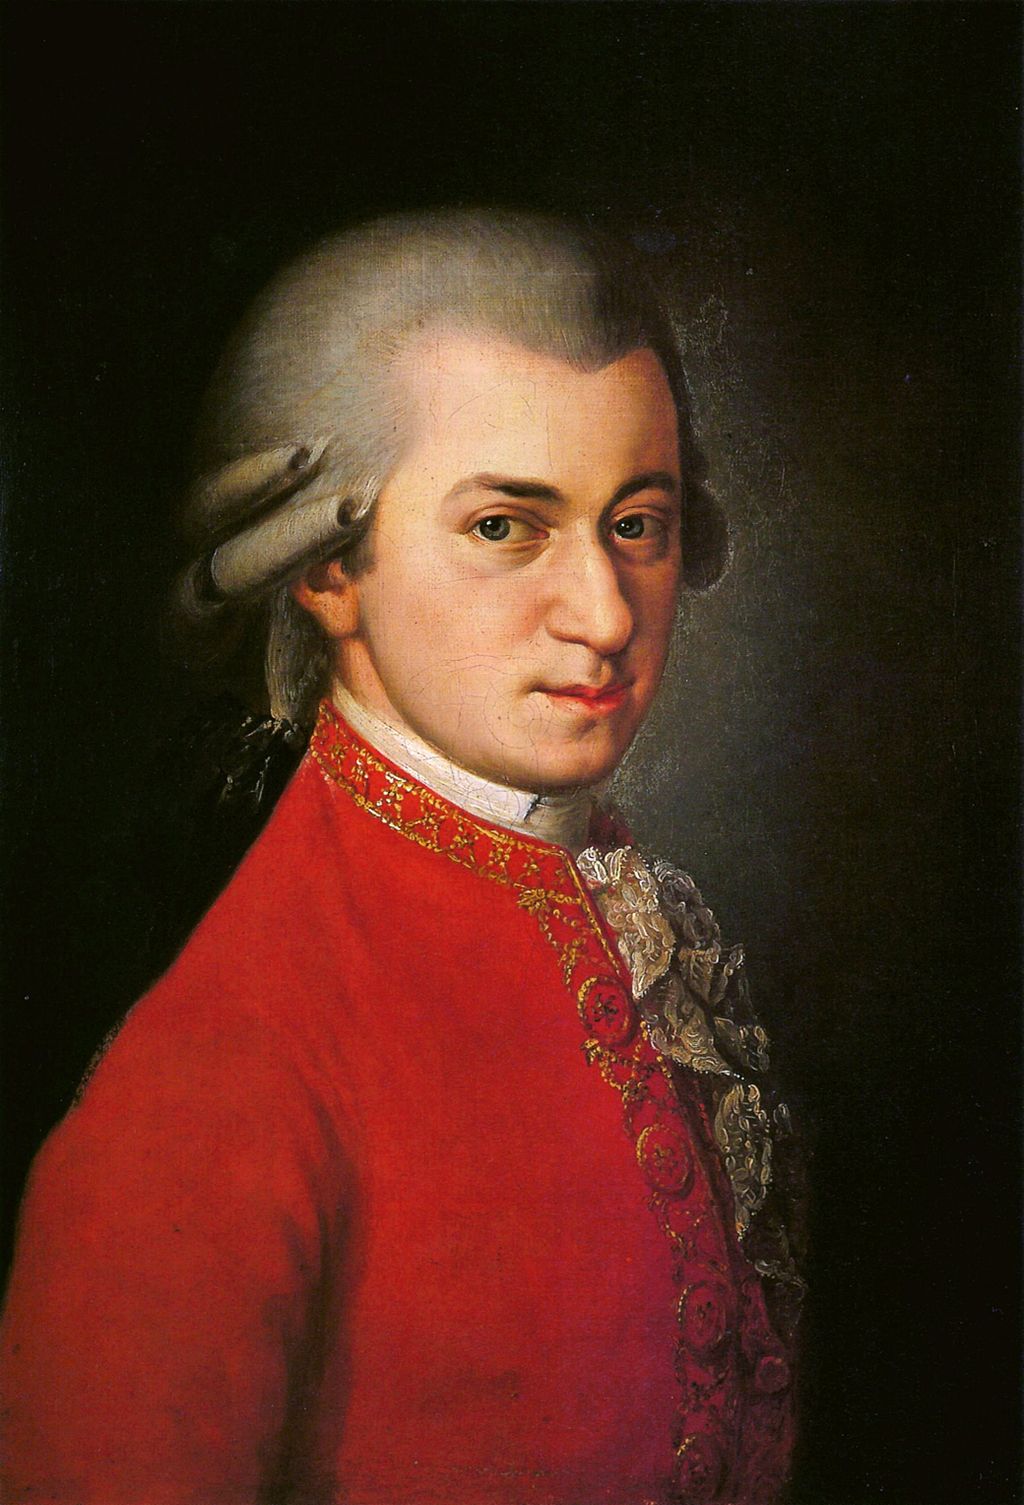 O peso de Mozart no seu Requiem  Euterpe – Blog de Música Clássica